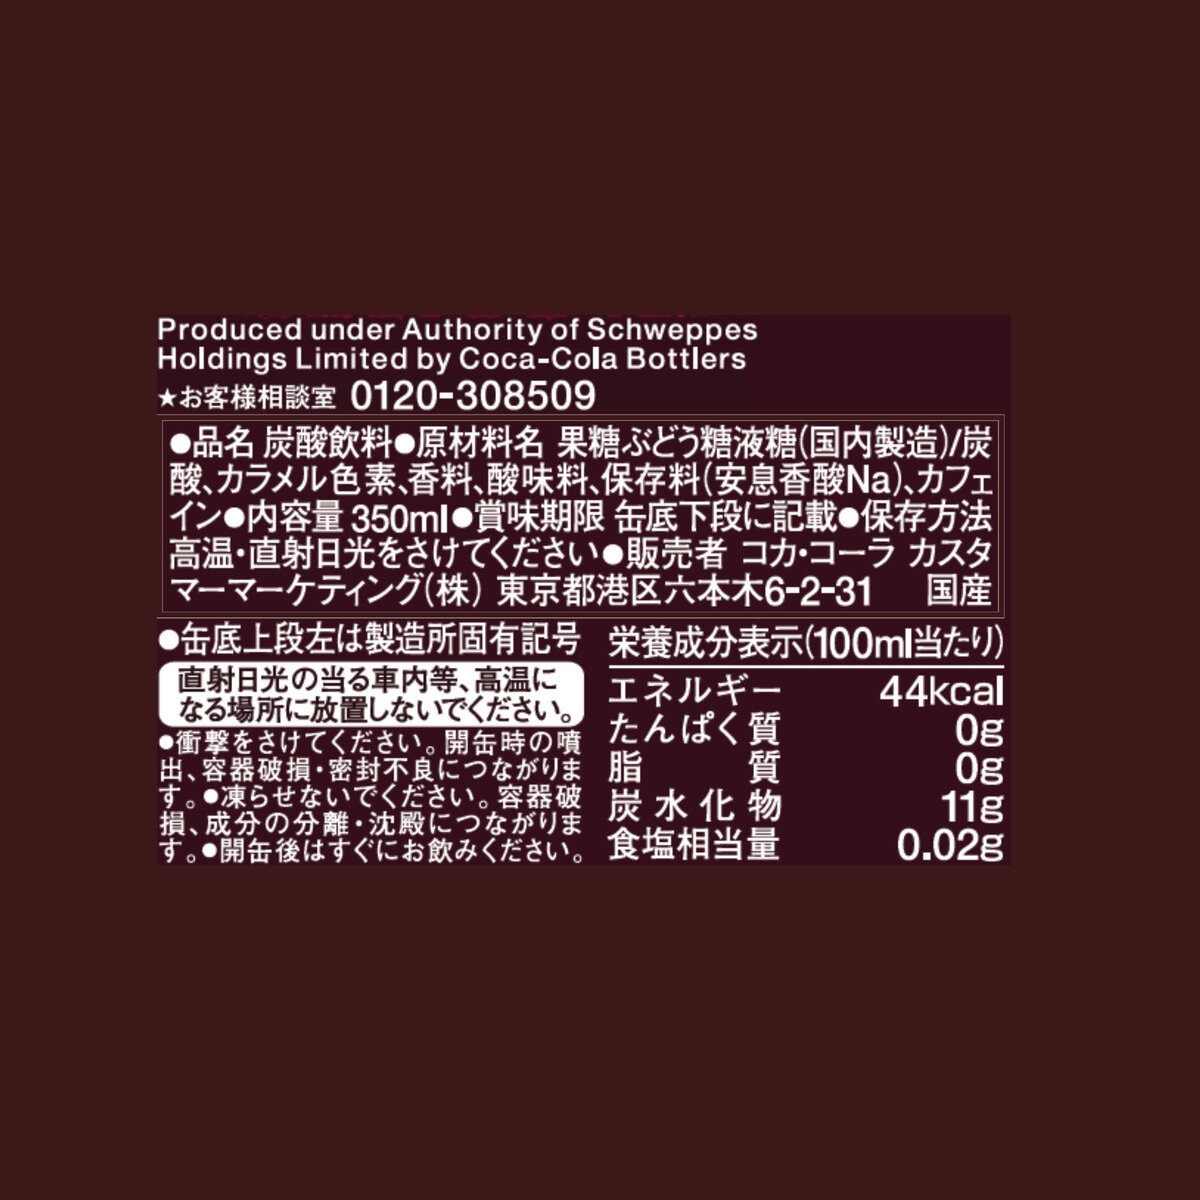 ドクターペッパー 350ml X 30缶 Costco Japan